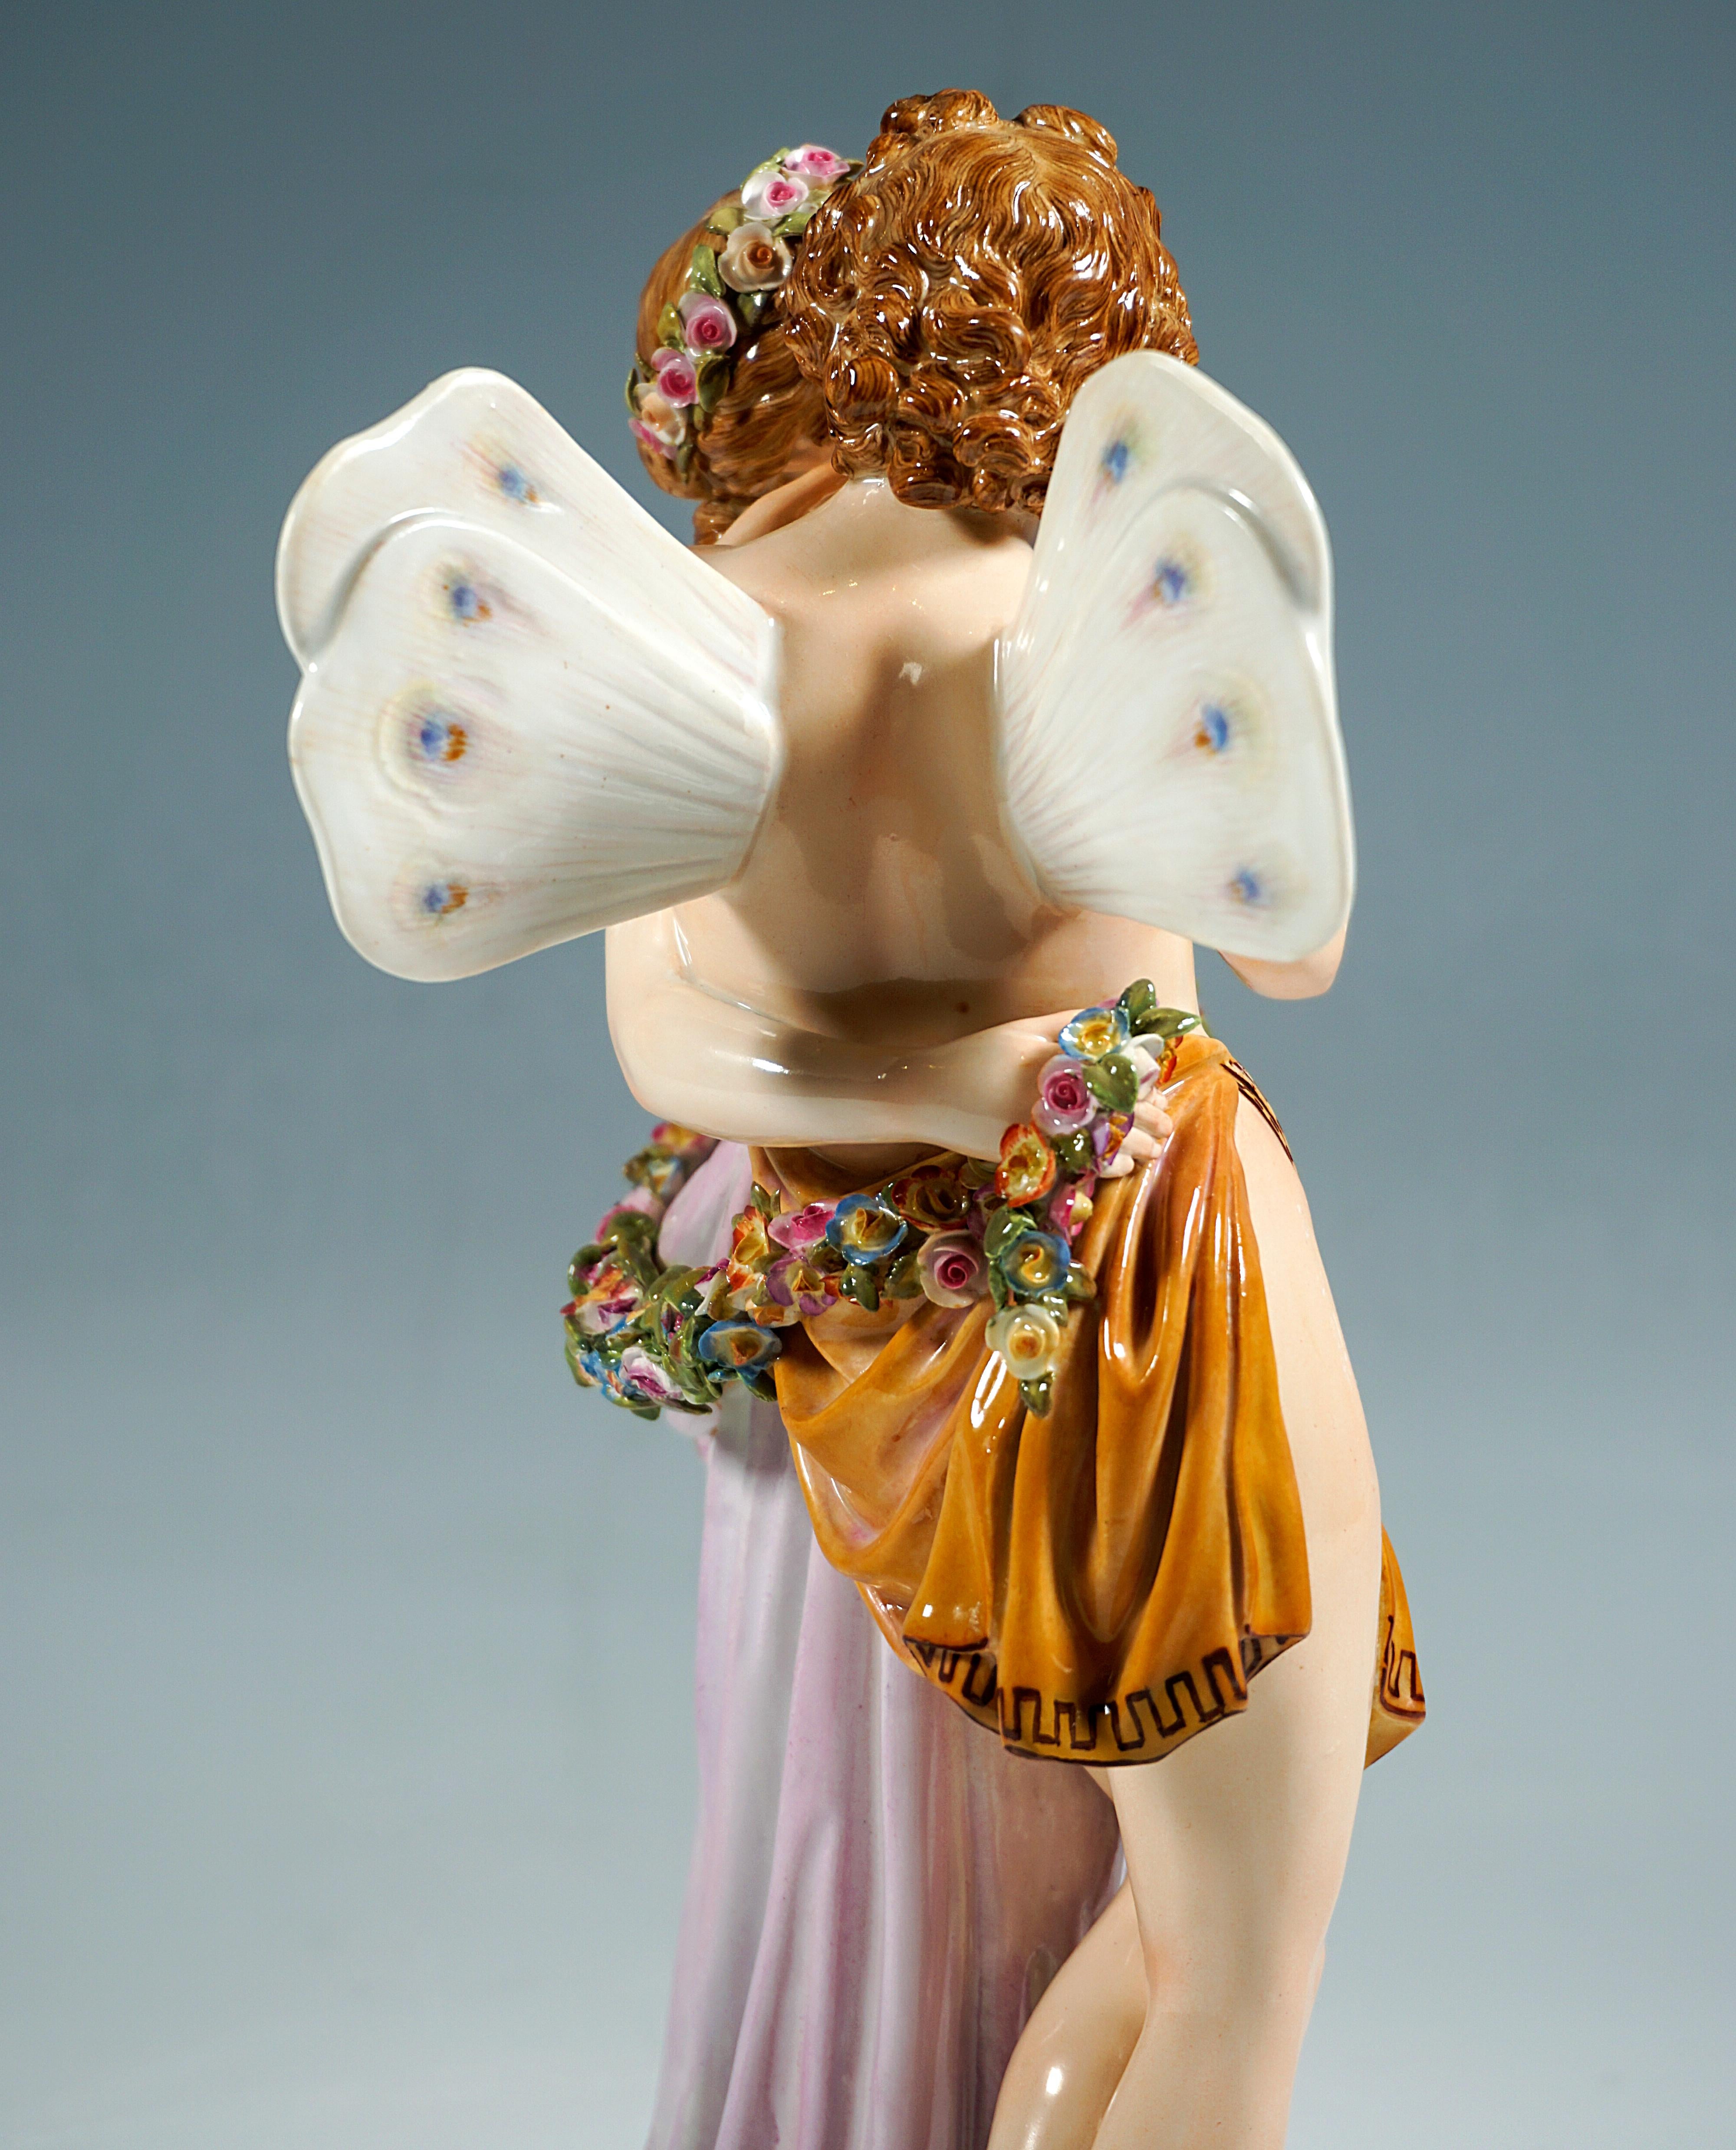 Mid-19th Century Meissen Porcelain Large Figurine Group 'Zephyr & Flora' By C.G. Juechtzer C.1860 For Sale